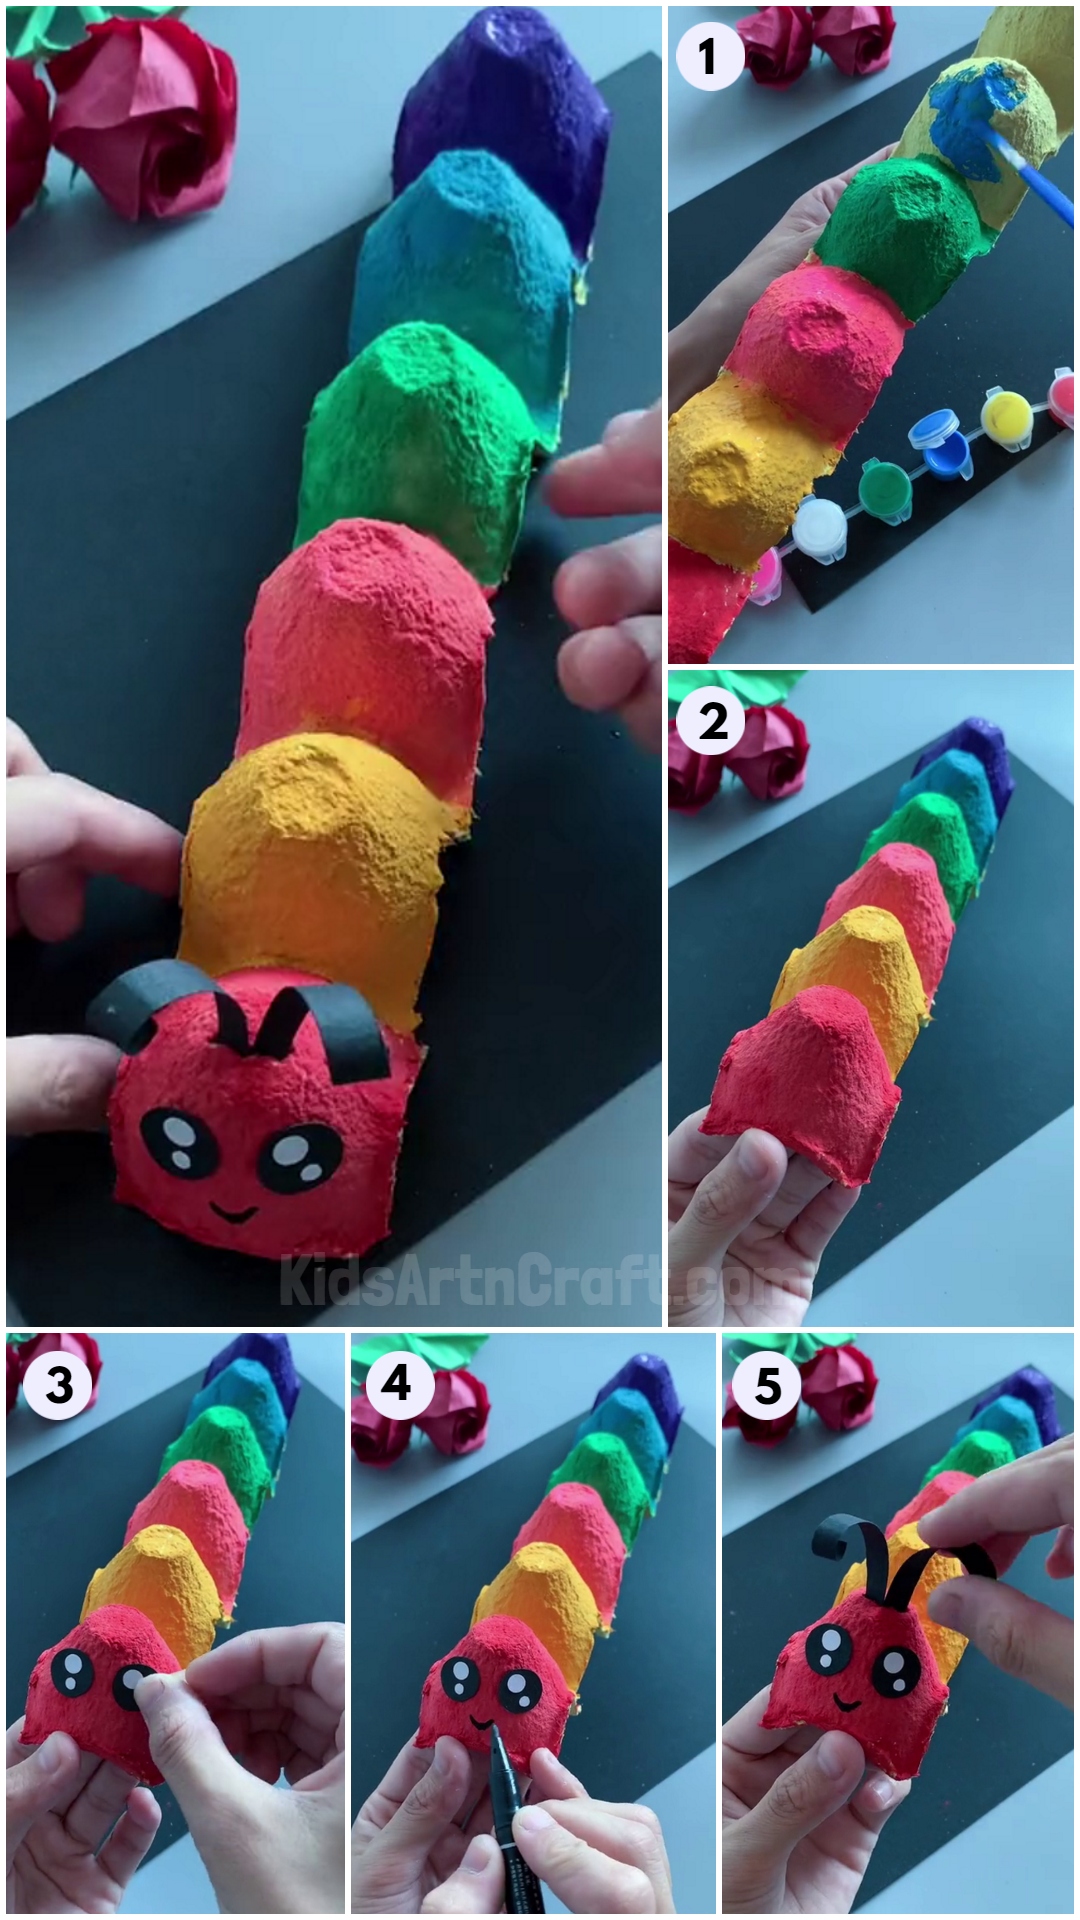 DIY Egg Carton Caterpillar Craft tutorial for kids